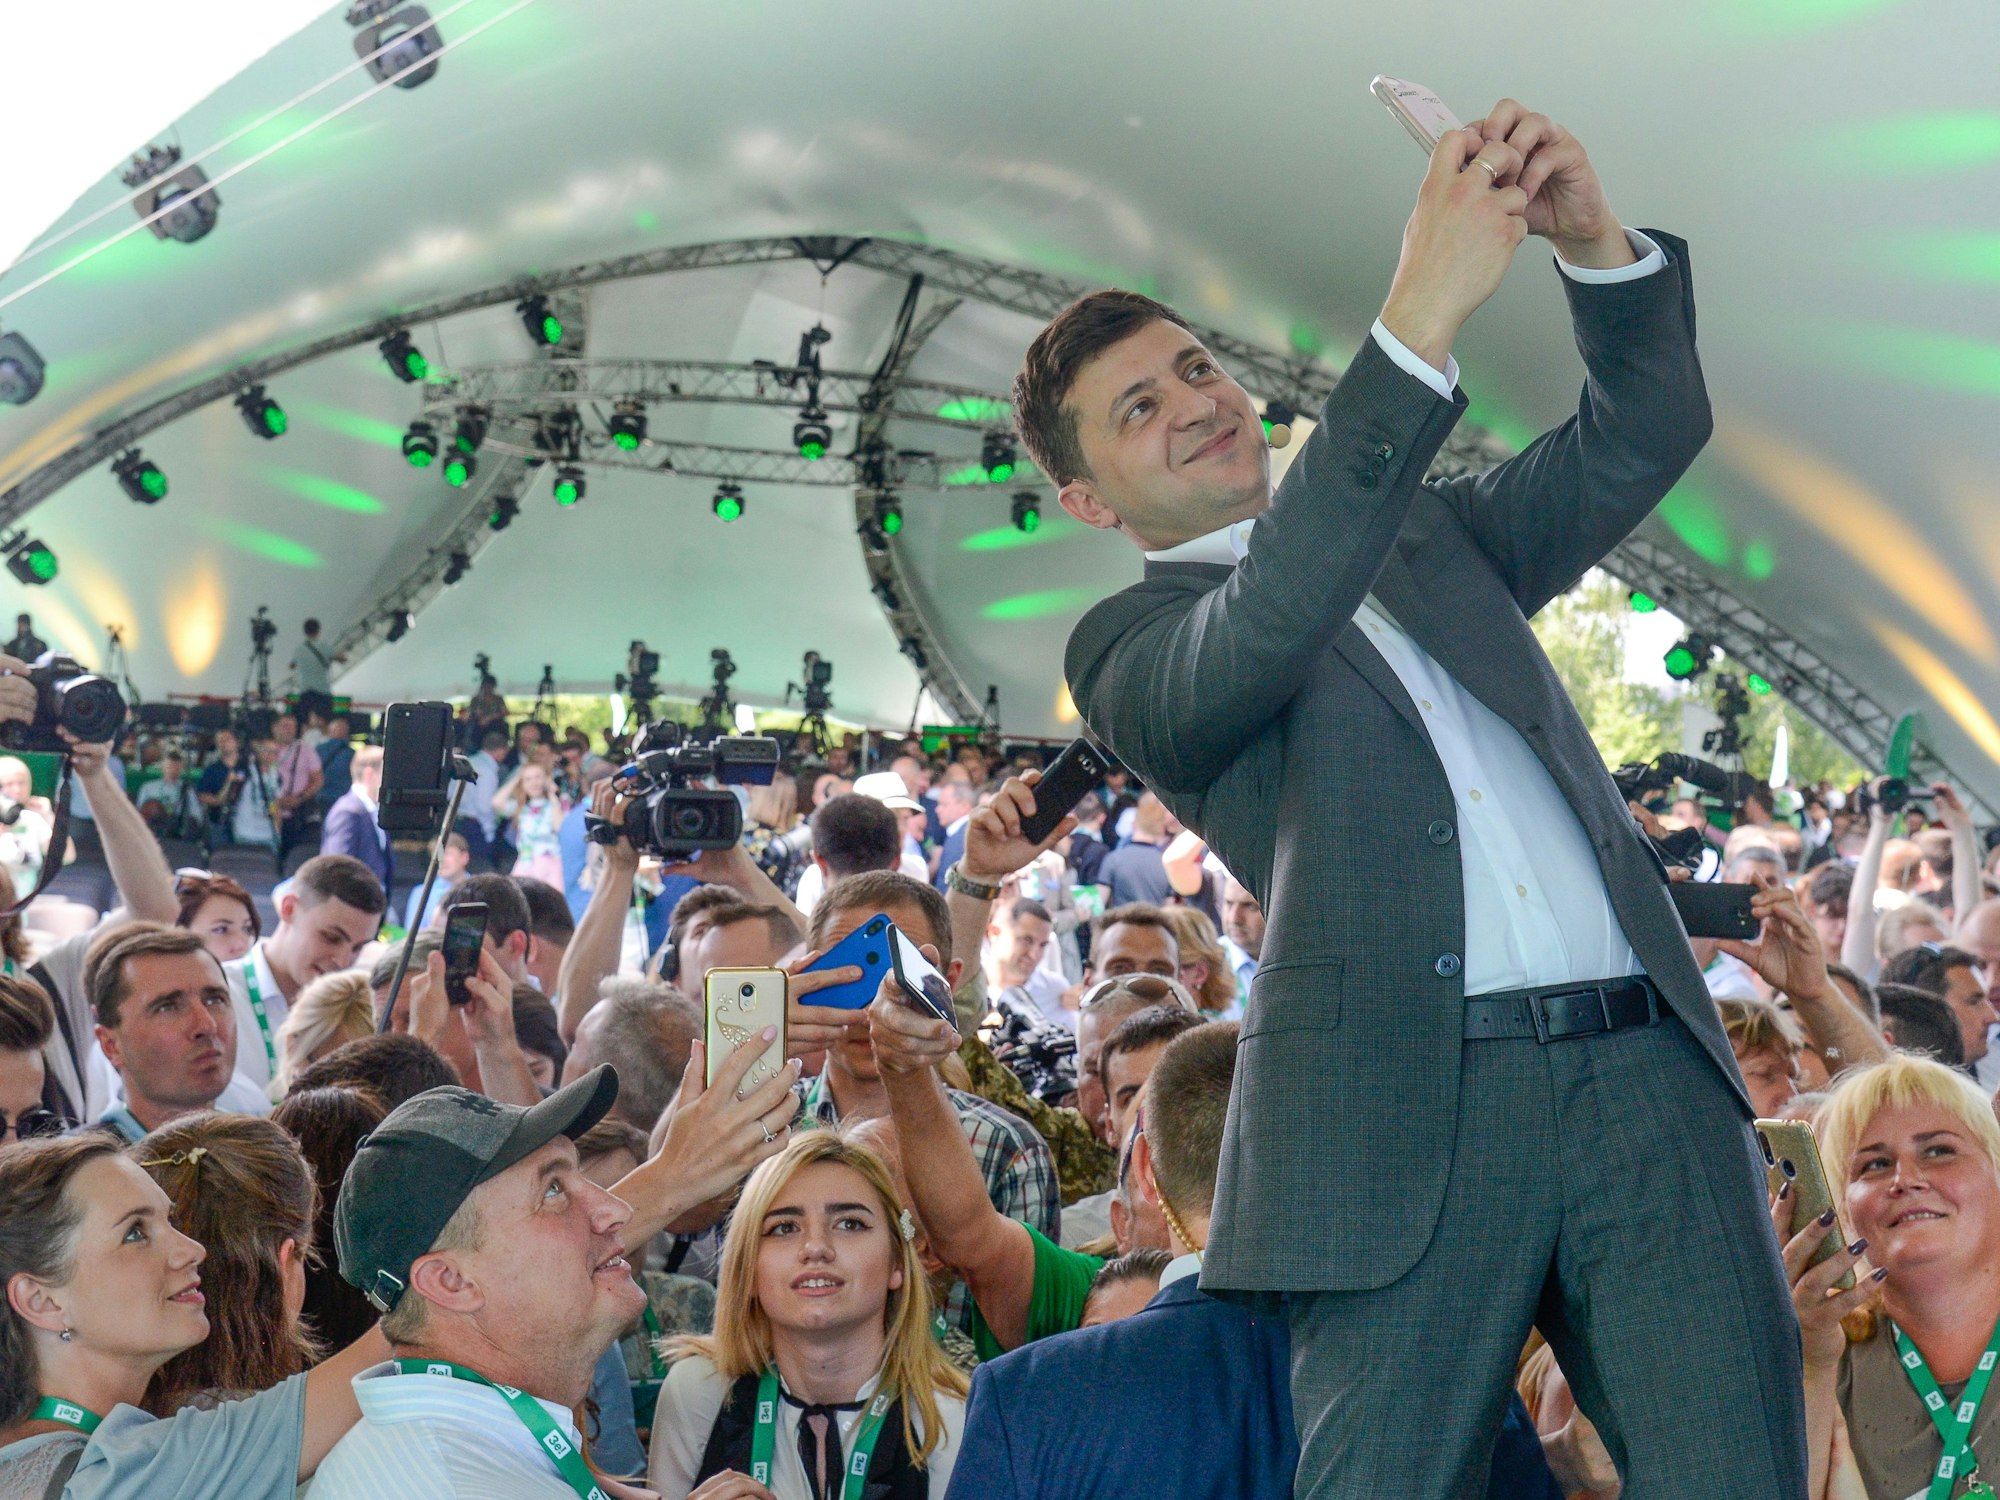 Das Foto von 2019 zeigt den ukrainischen Präsidenten Wolodymyr Selenskyj, wie er in einem großen Zelt vor vielen Menschen steht und mit dem Handy ein Selfie von sich und der Menge macht.